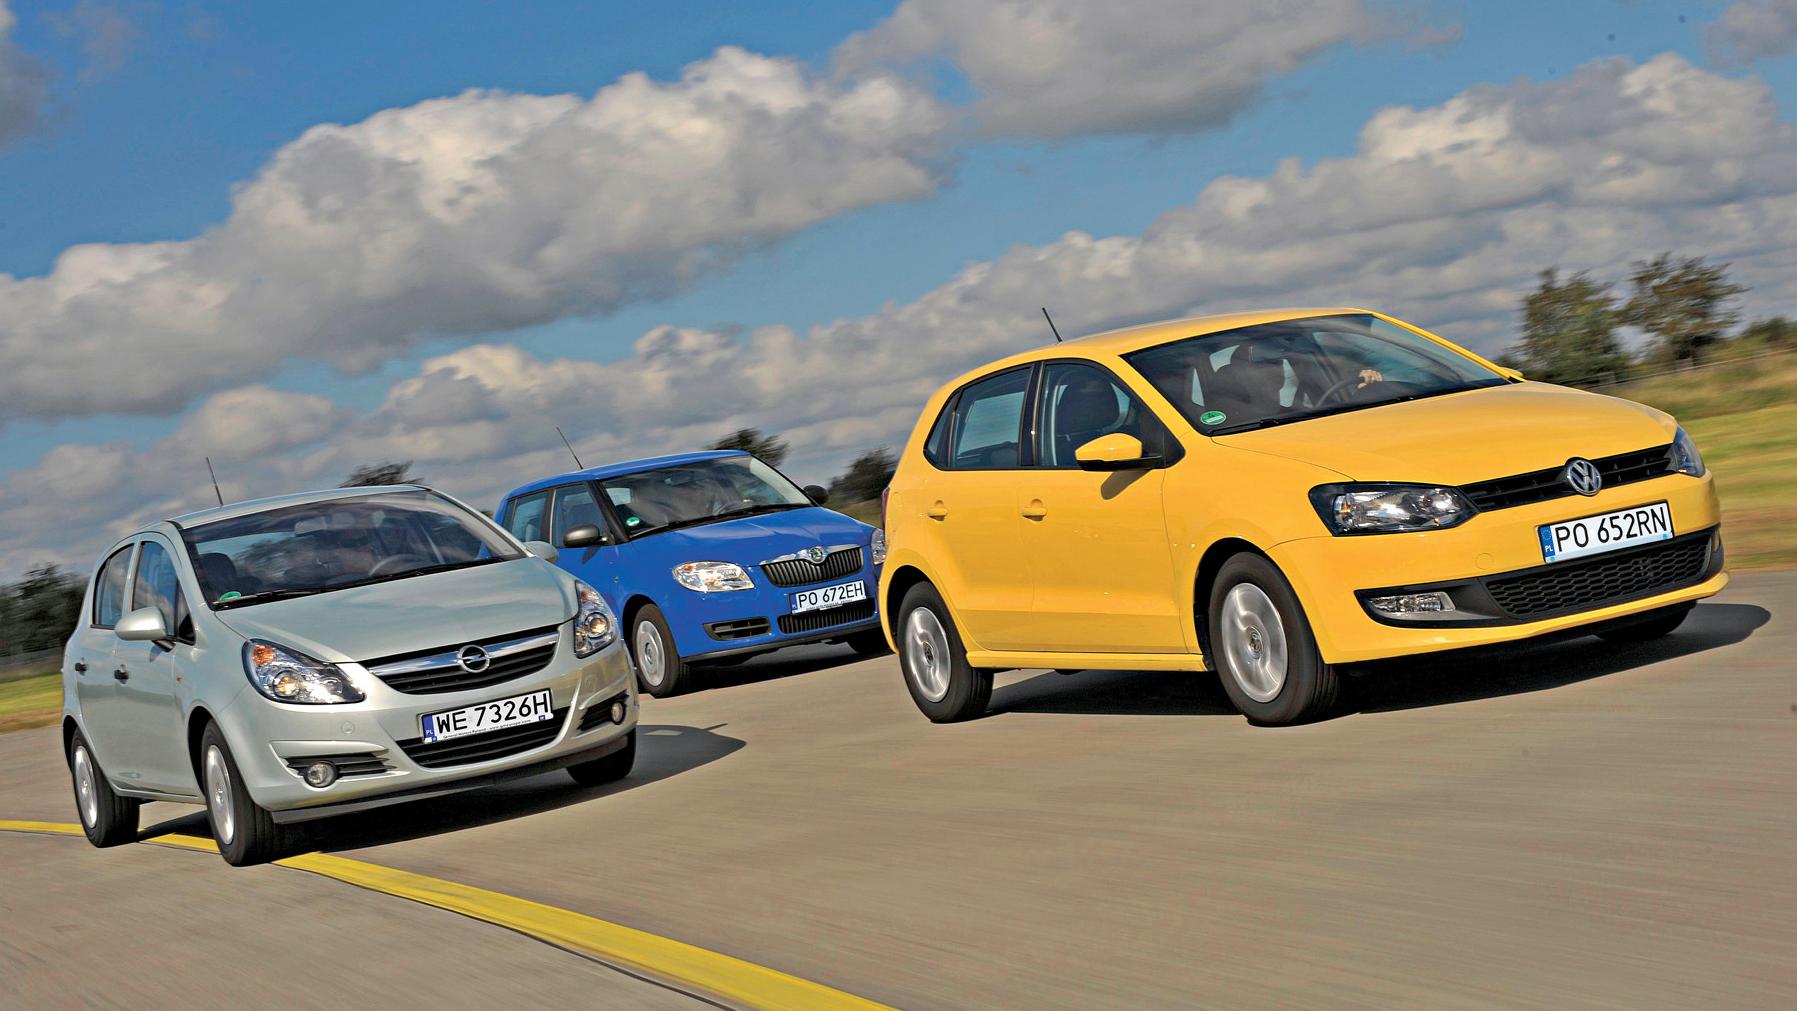 Szukamy Najlepszego Auta Do Miasta Za 15-20 Tys. Zł - Opel Corsa Kontra Skoda Fabia I Volkswagen Polo